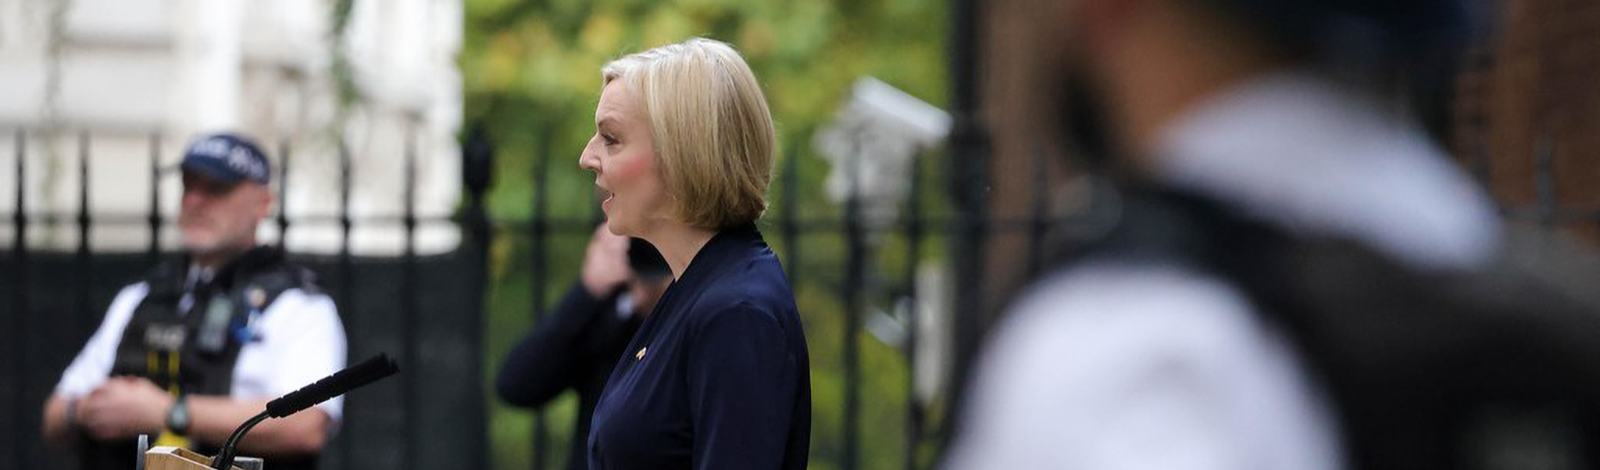 Recessão e crise de governo levam à renúncia de Liz Truss, primeira-ministra do Reino Unido